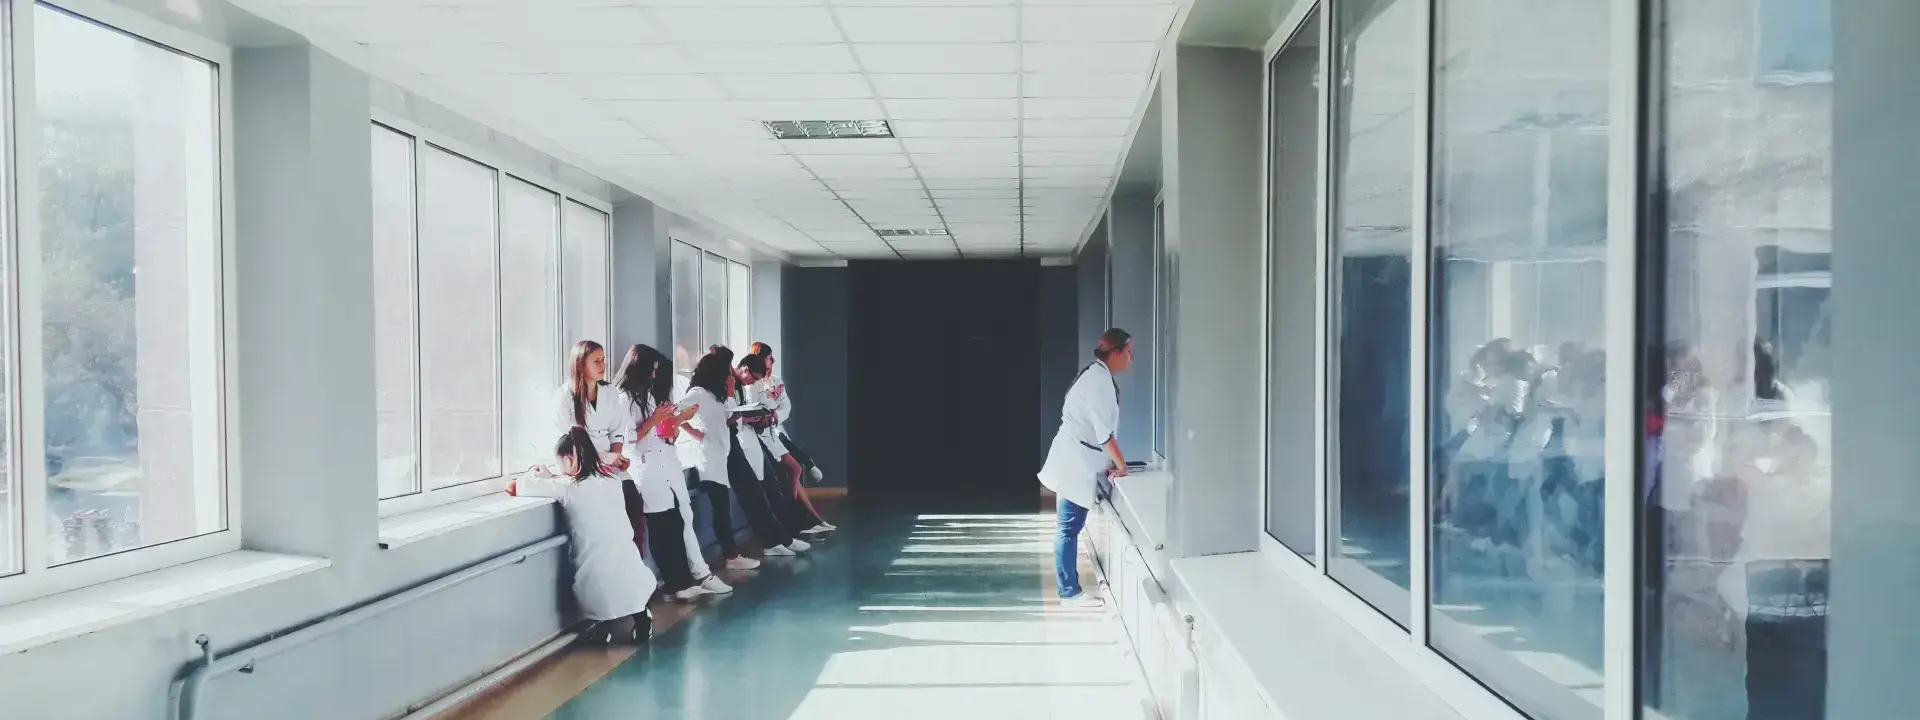 Hospital Porter Staff in Denmark